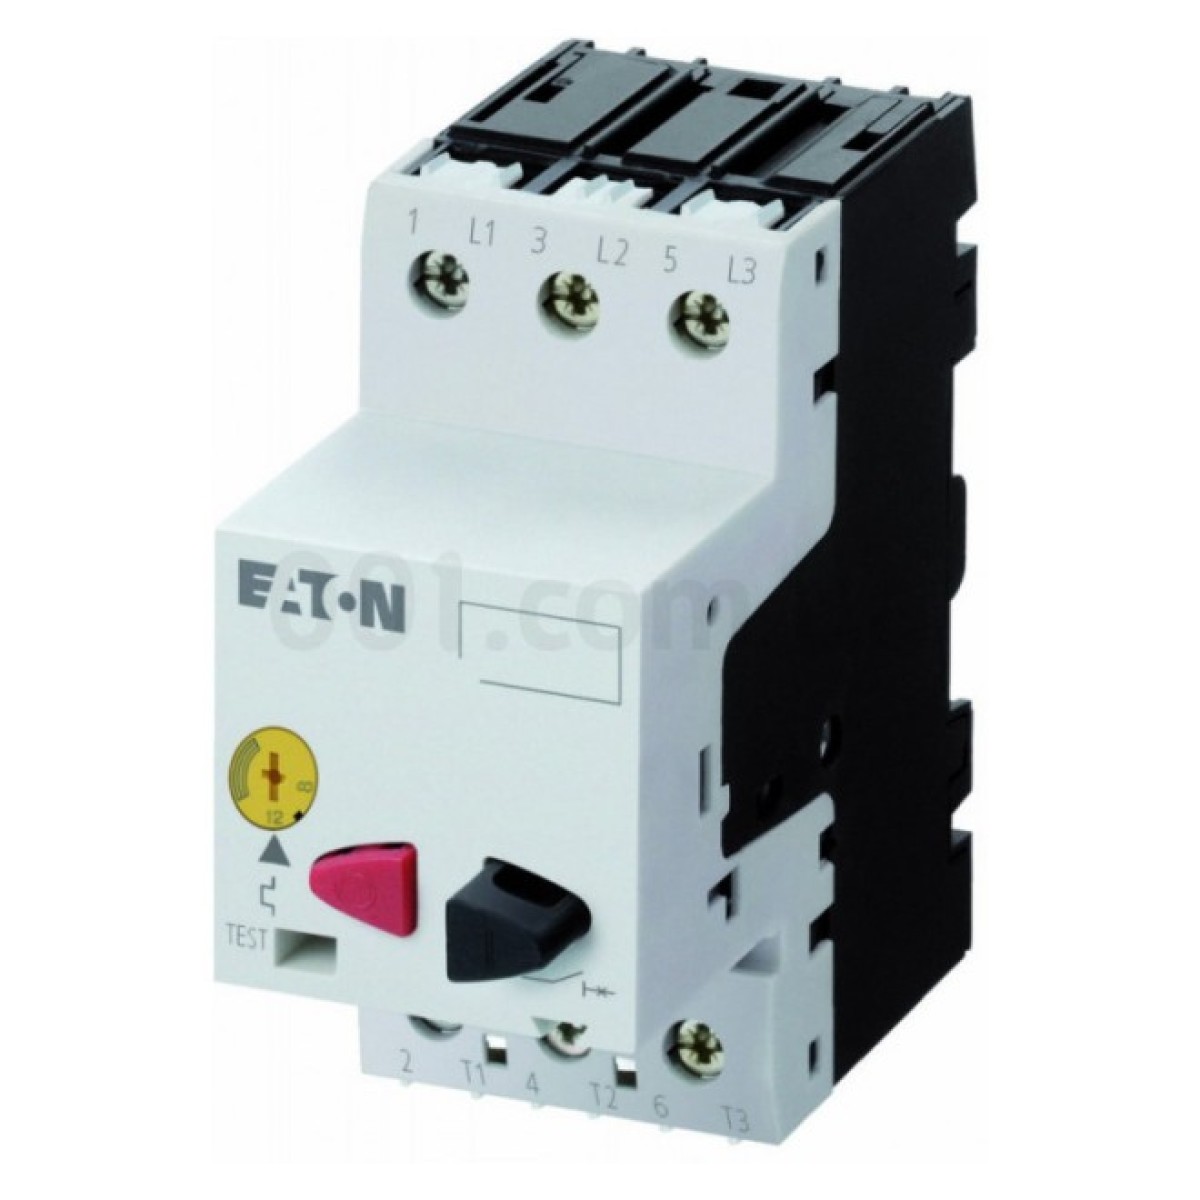 Автоматический выключатель защиты двигателя PKZM01-20 Ir=16...20А, Eaton (Moeller) 256_256.jpg